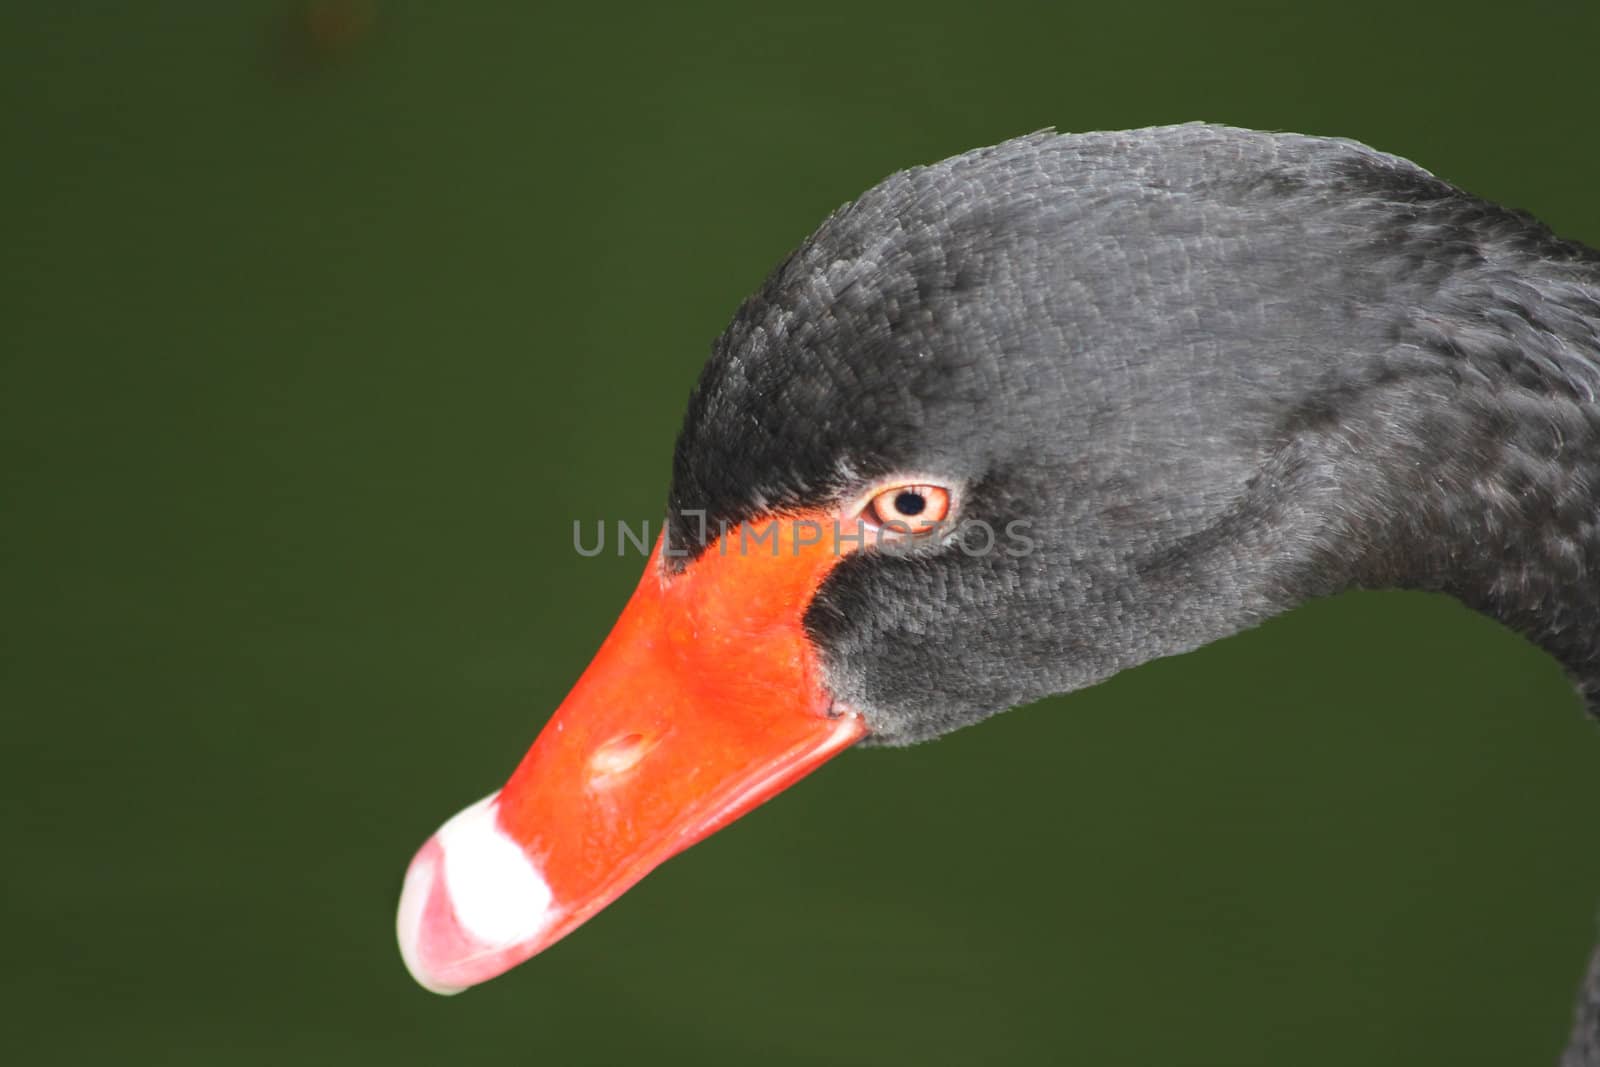 Black swan's head by Lessadar